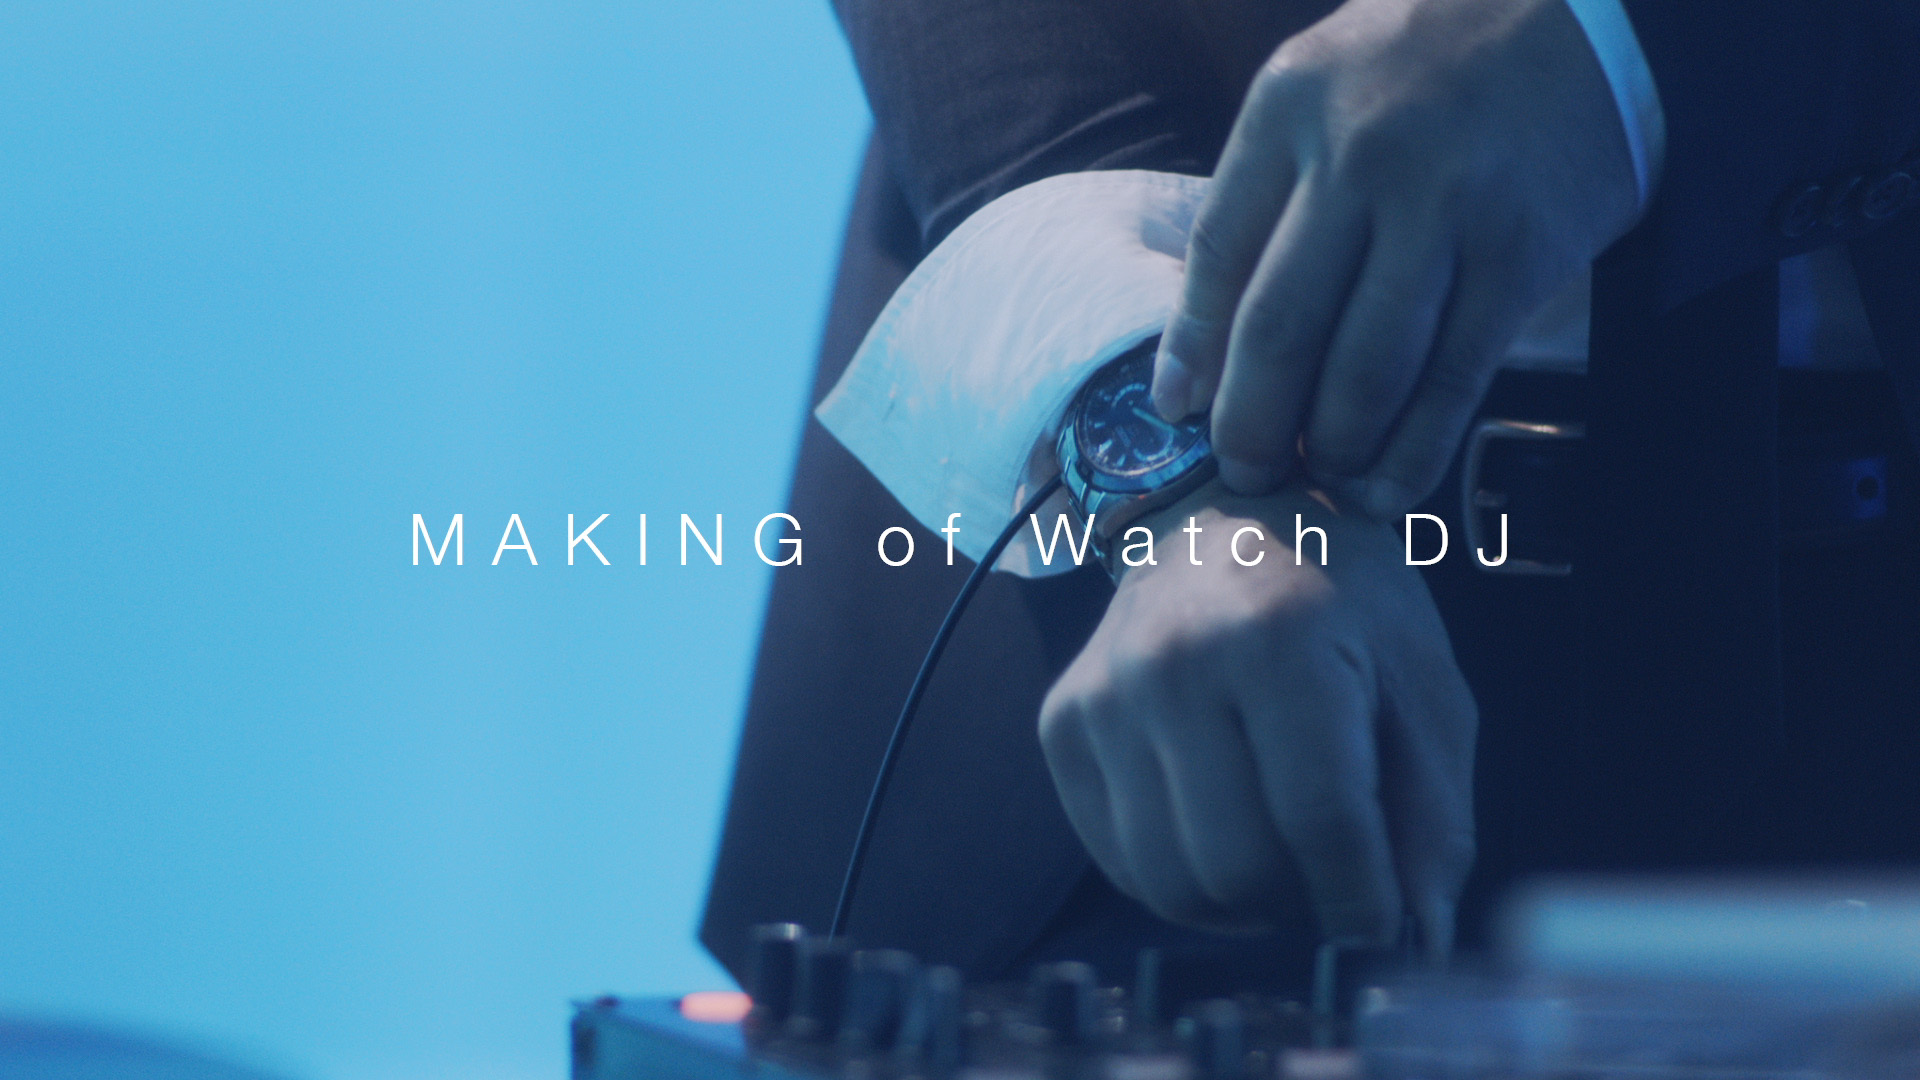 『本物の腕時計でDJプレイに挑戦してみた』動画が合計25万再生突破　仕組みがわかるメイキング動画を新たに公開